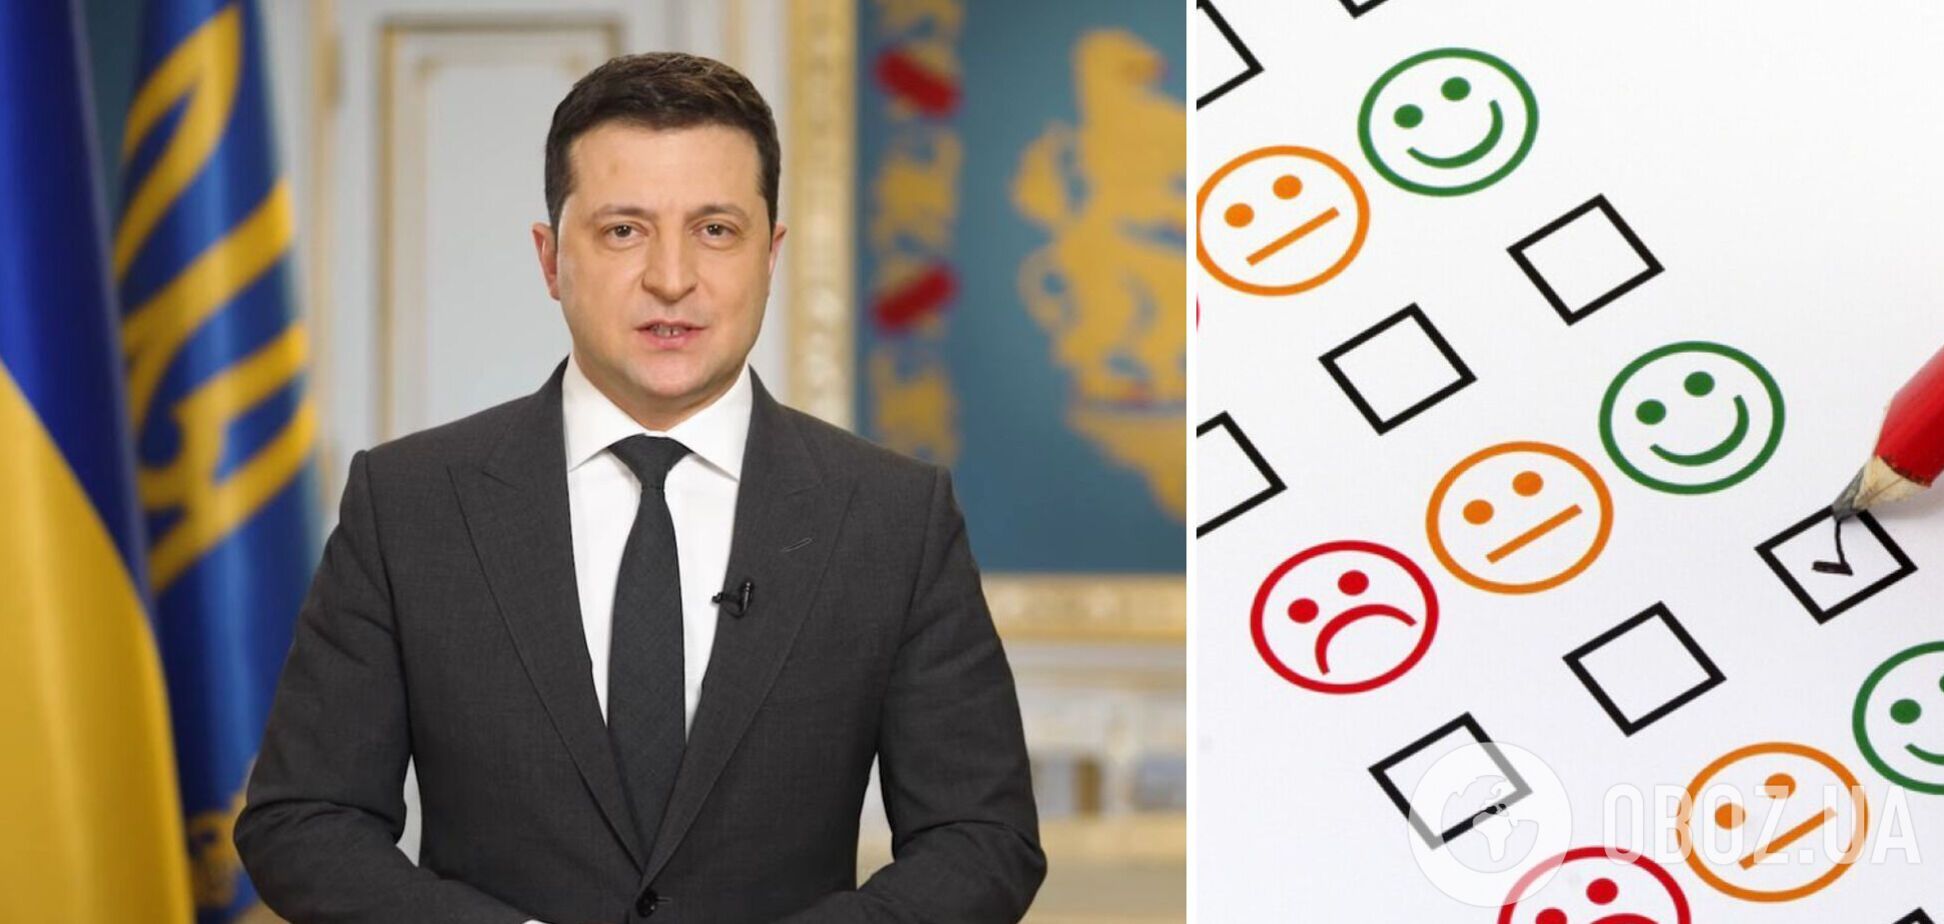 Протягом двох років довіра українців до президента зменшилася, показало опитування